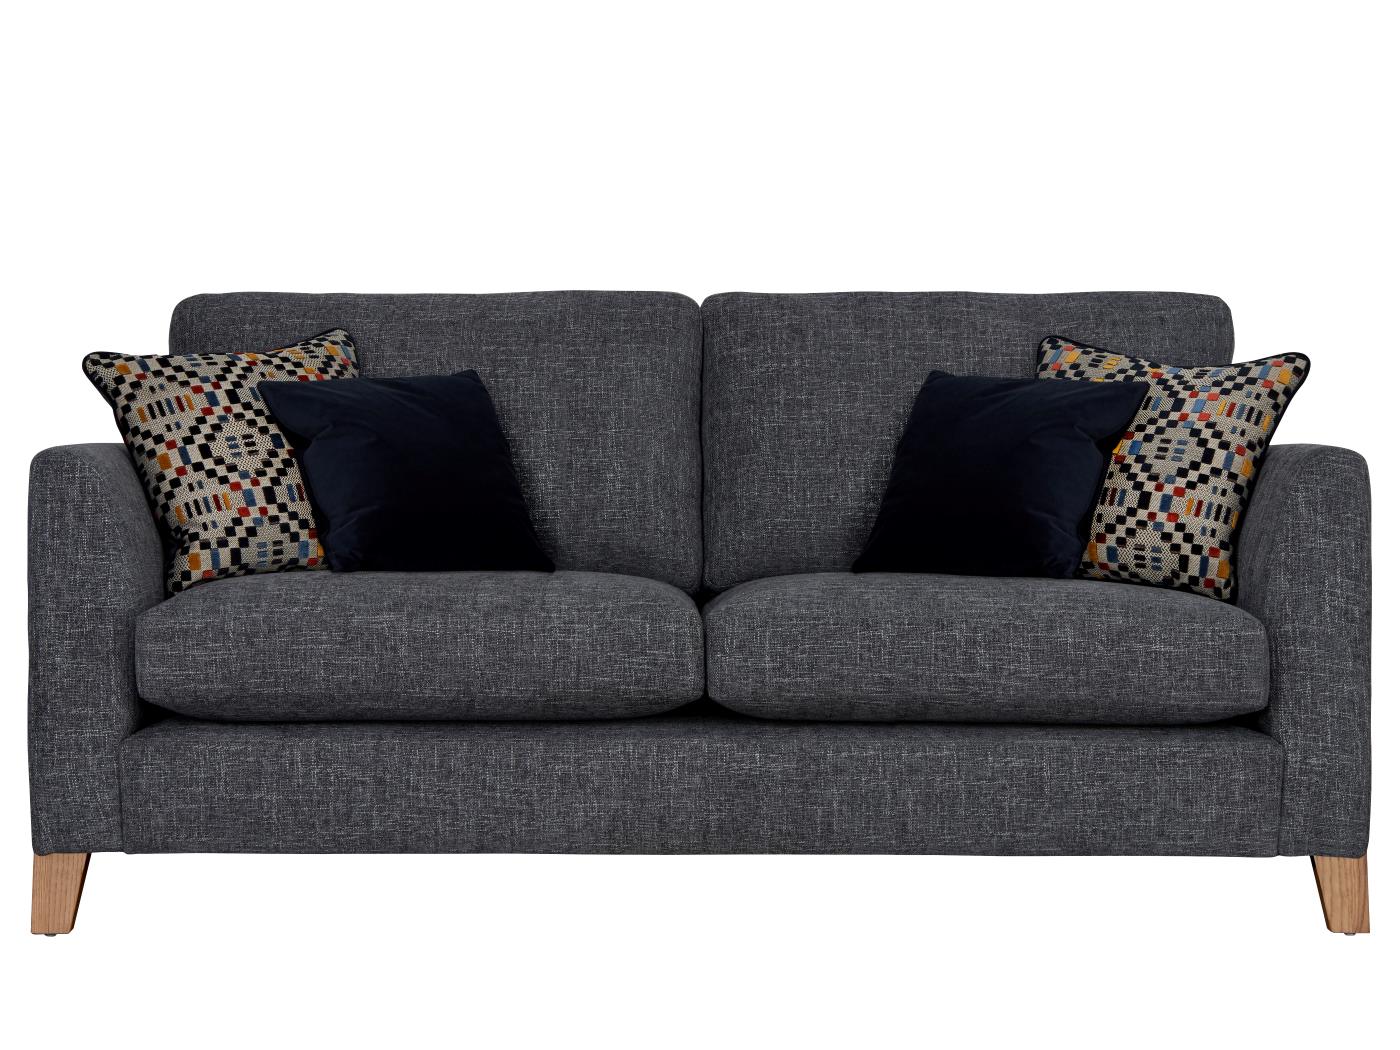 Westminster medium sofa